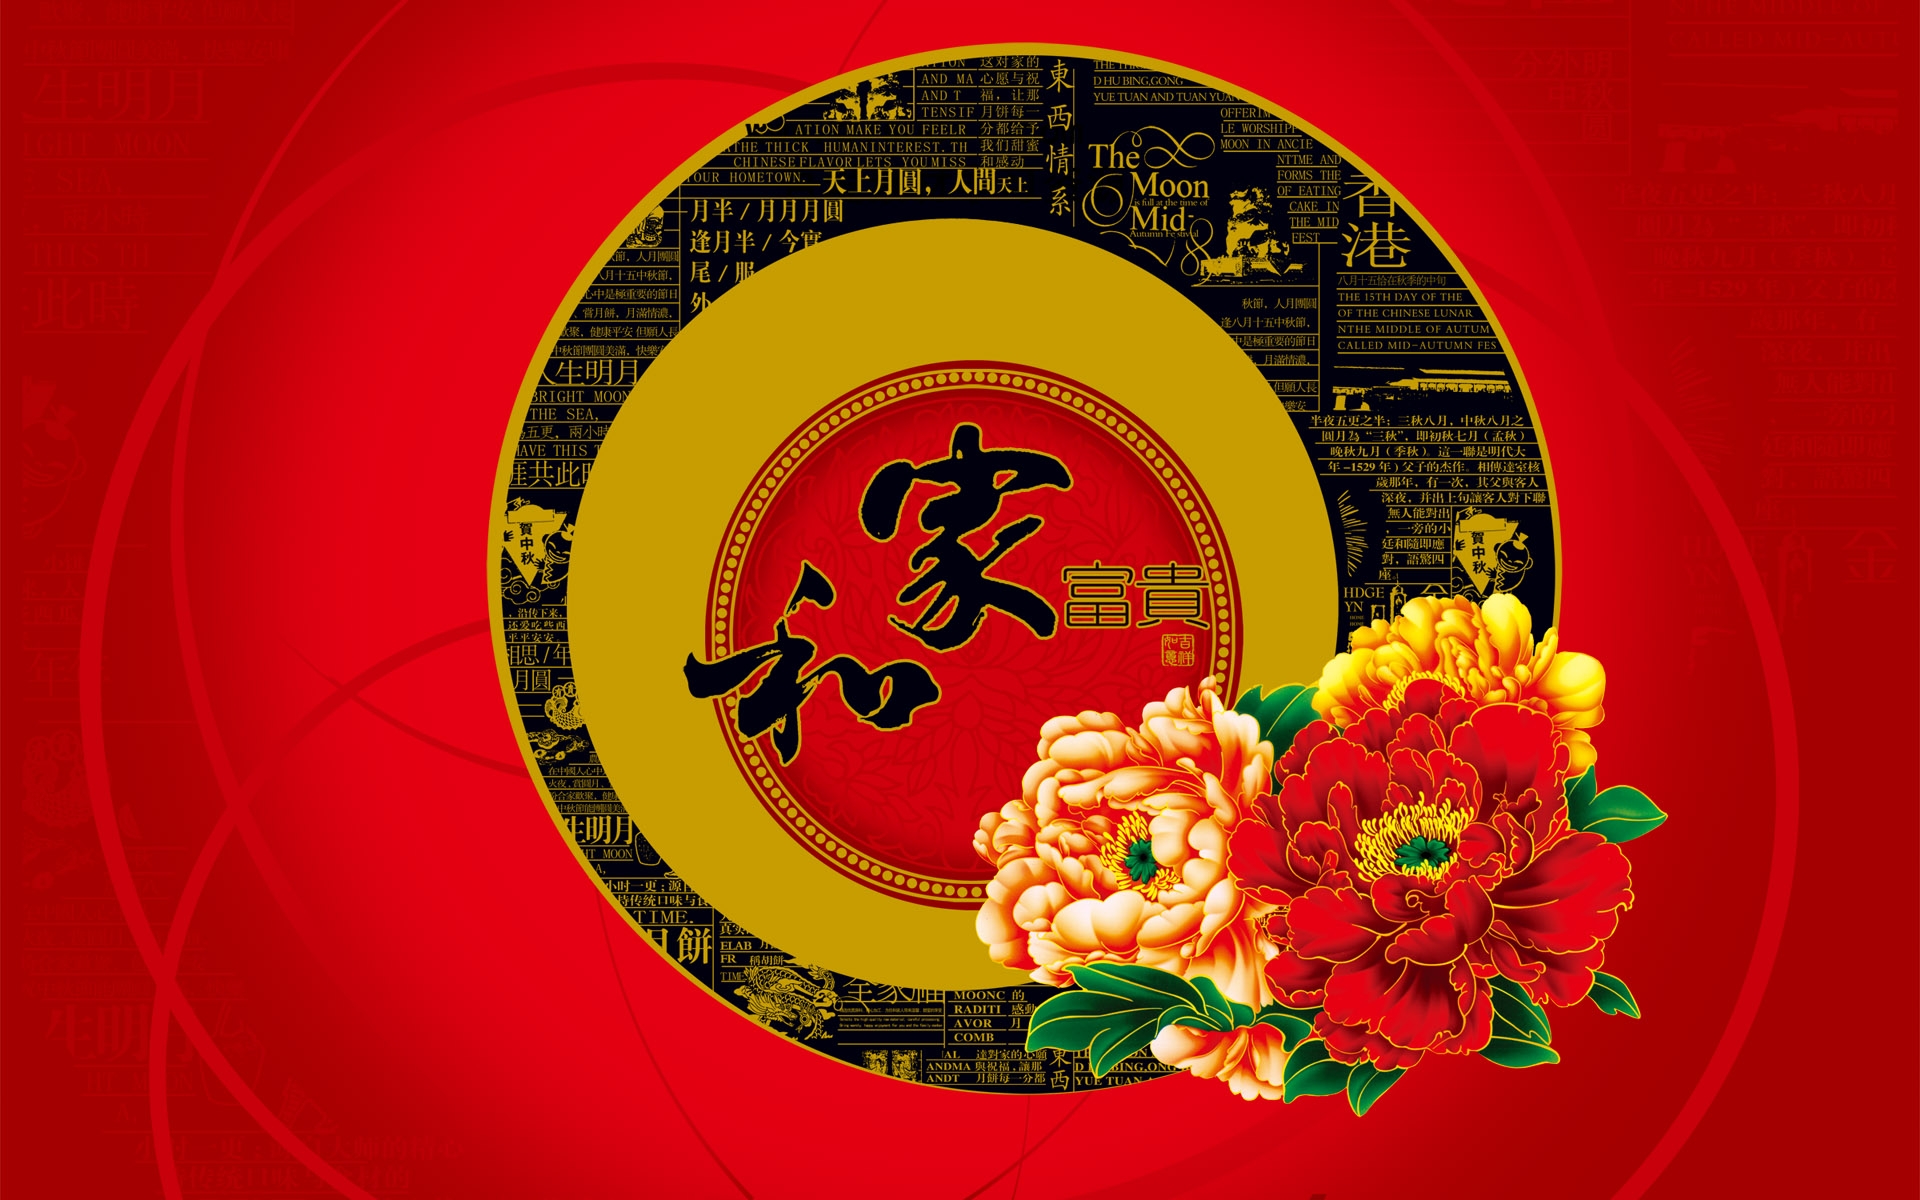 Фанфеншуй ру. Символ богатства и процветания. Китайские обои. Фен шуй. Символ процветания и благополучия.